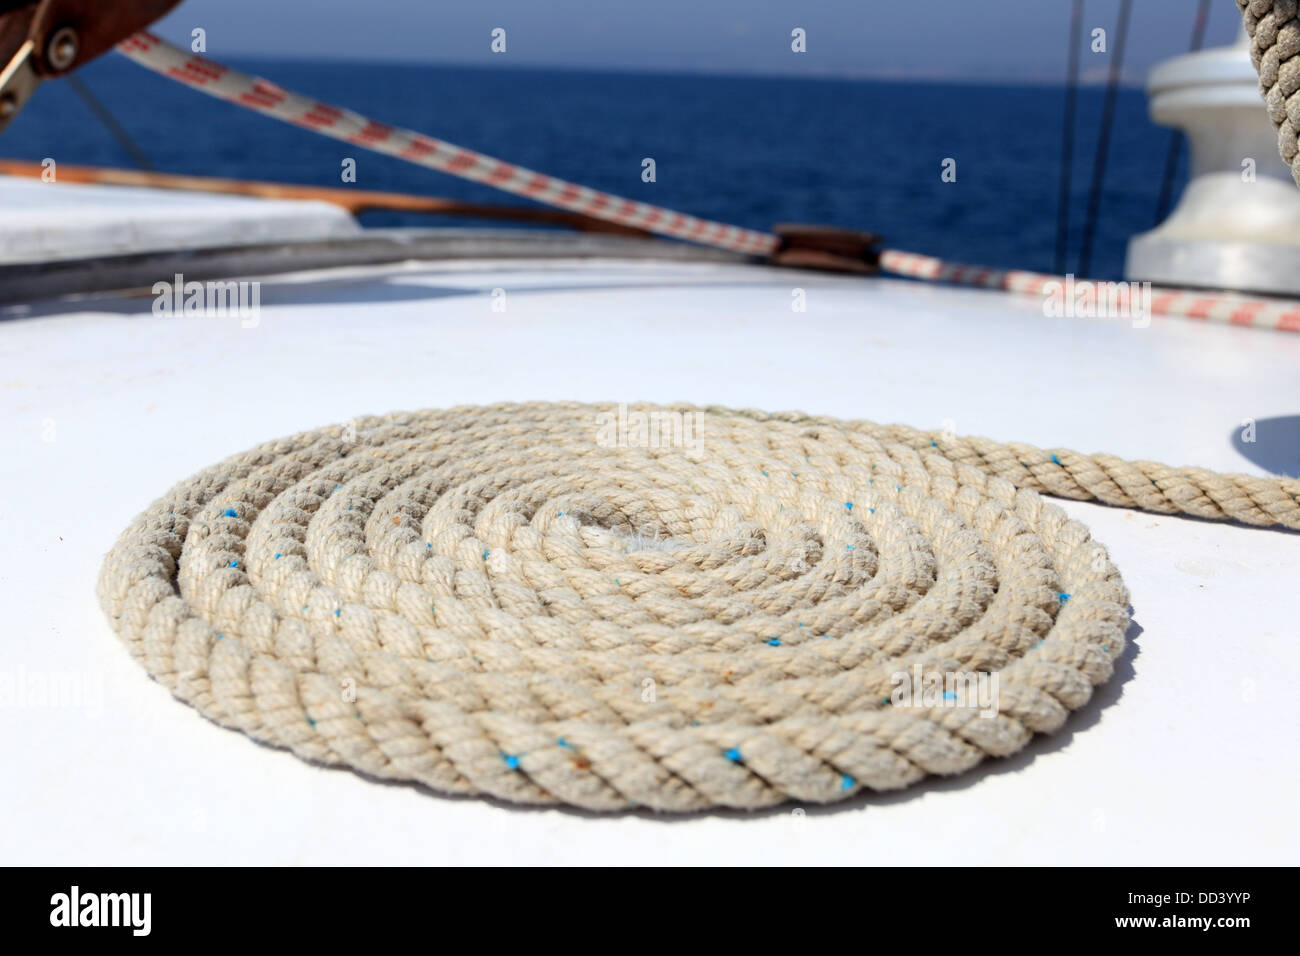 https://c8.alamy.com/comp/DD3YYP/sailing-rope-on-board-of-a-yacht-DD3YYP.jpg